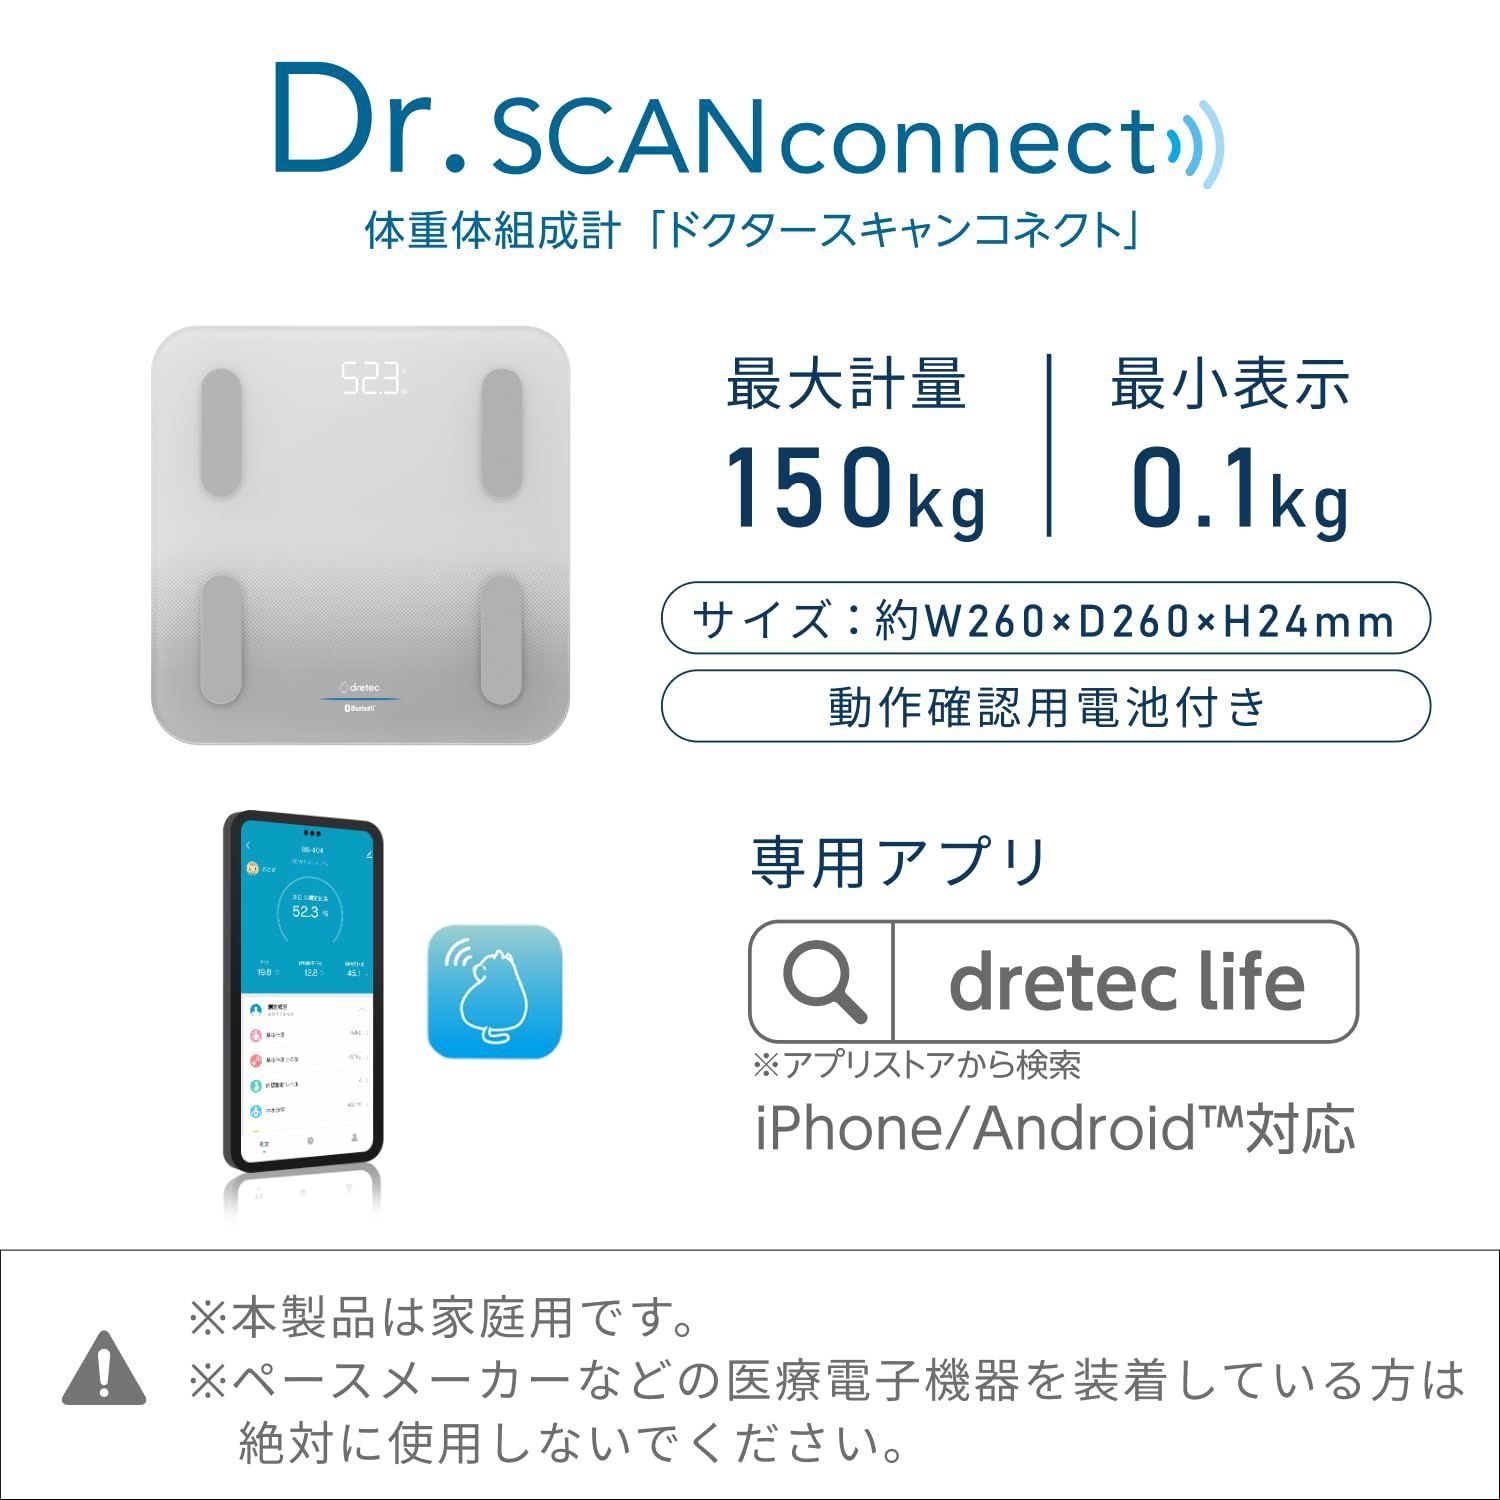 新品 dretec(ドリテック）体重･体組成計 Dr.SCAN connect [ユーザー共有最大10人･離れた家族の見守り活用に] スマホ連動 アプリで自動データ管理 11項目を10秒でスピード計測 体重/体脂肪率/BMI/筋肉量/基礎代謝量/水分率/骨量/